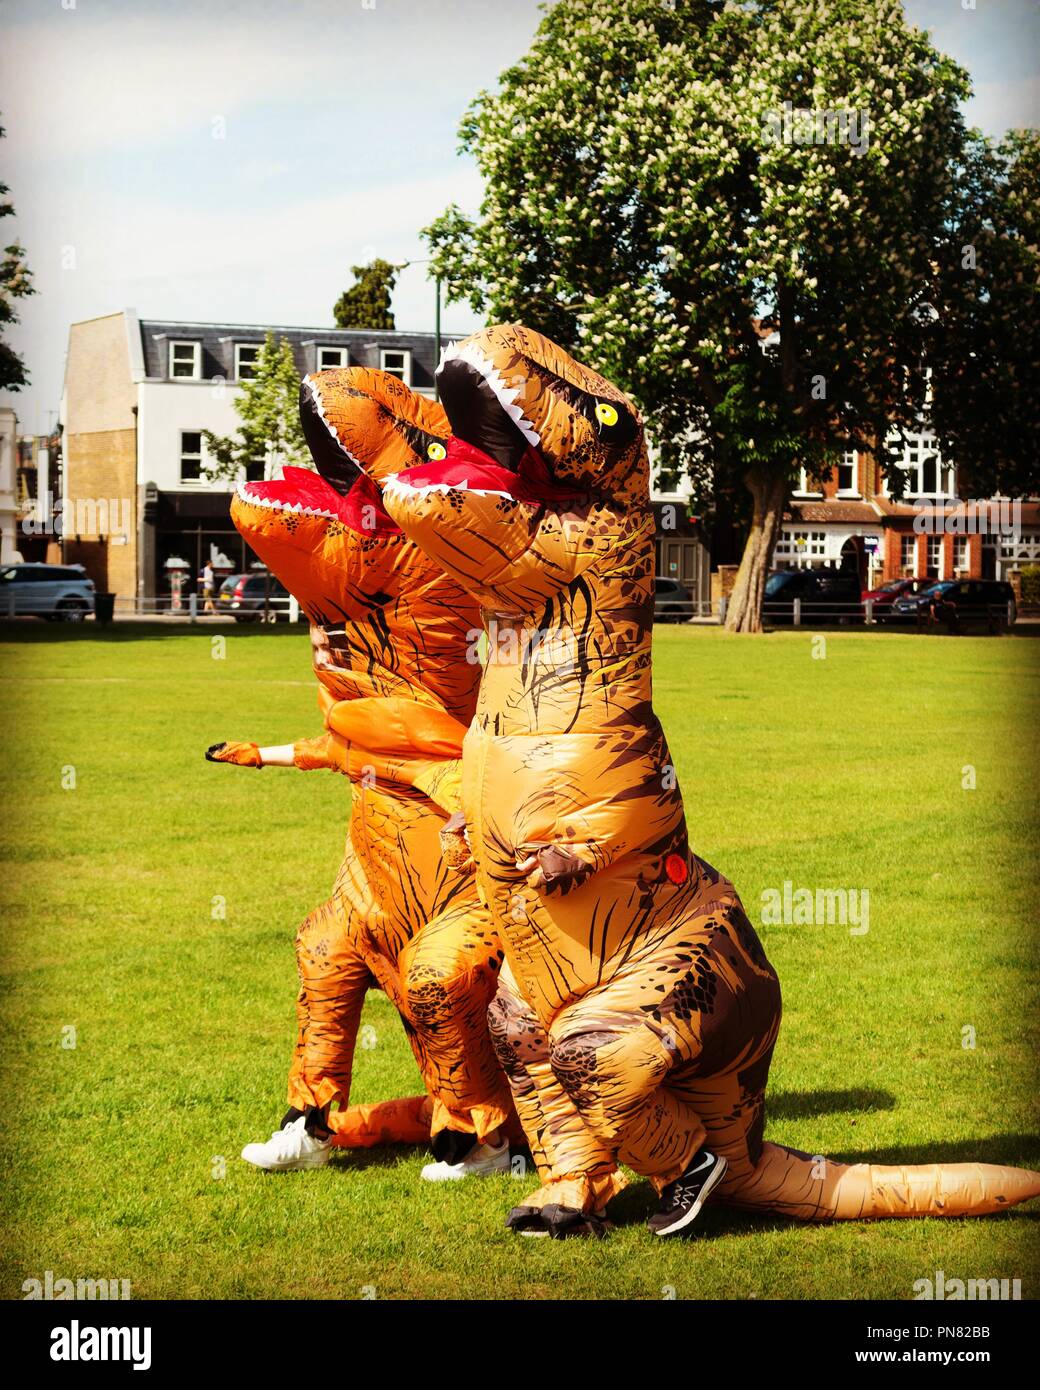 Deux personnes portant des costumes de dinosaures gonflables ( T Rex ) pour marcher à travers la fantaisie robe verte de Twickenham, Royaume-Uni Banque D'Images